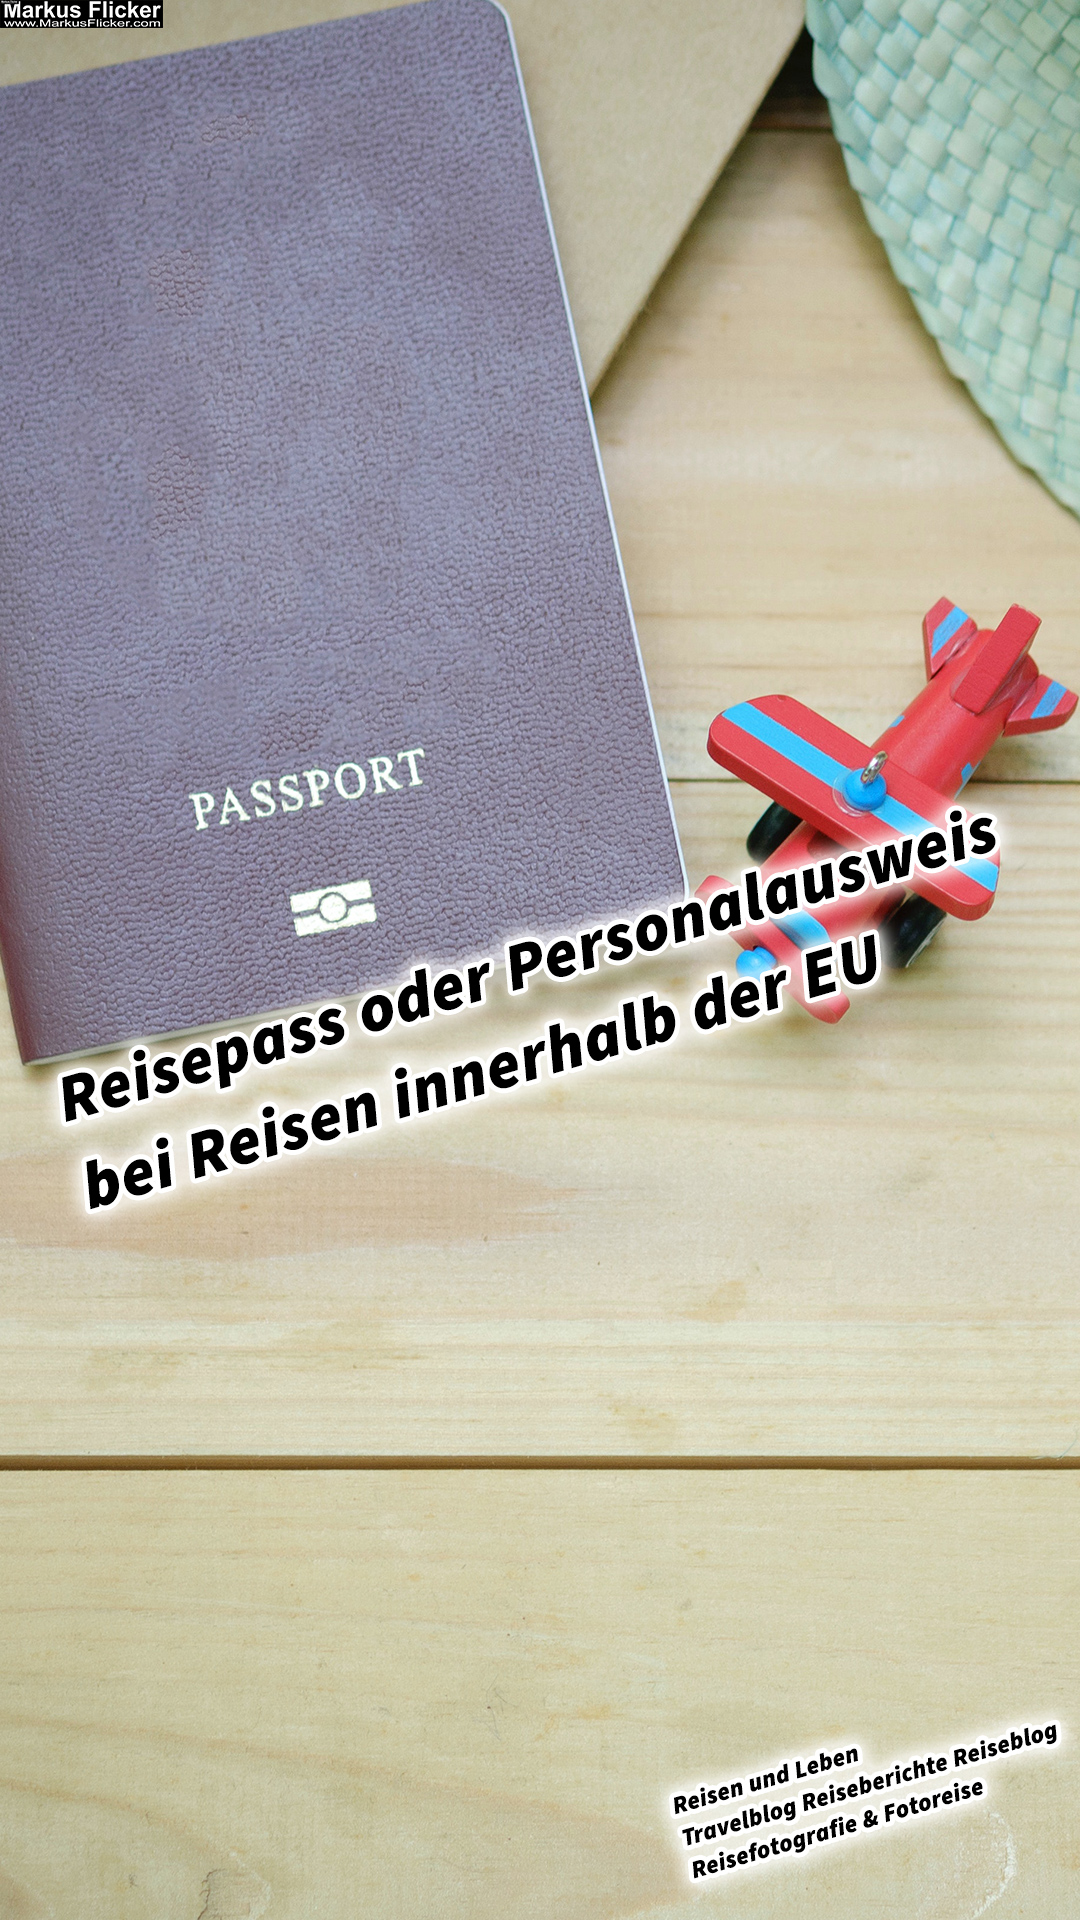 Reisepass oder Personalausweis bei Reisen innerhalb der EU